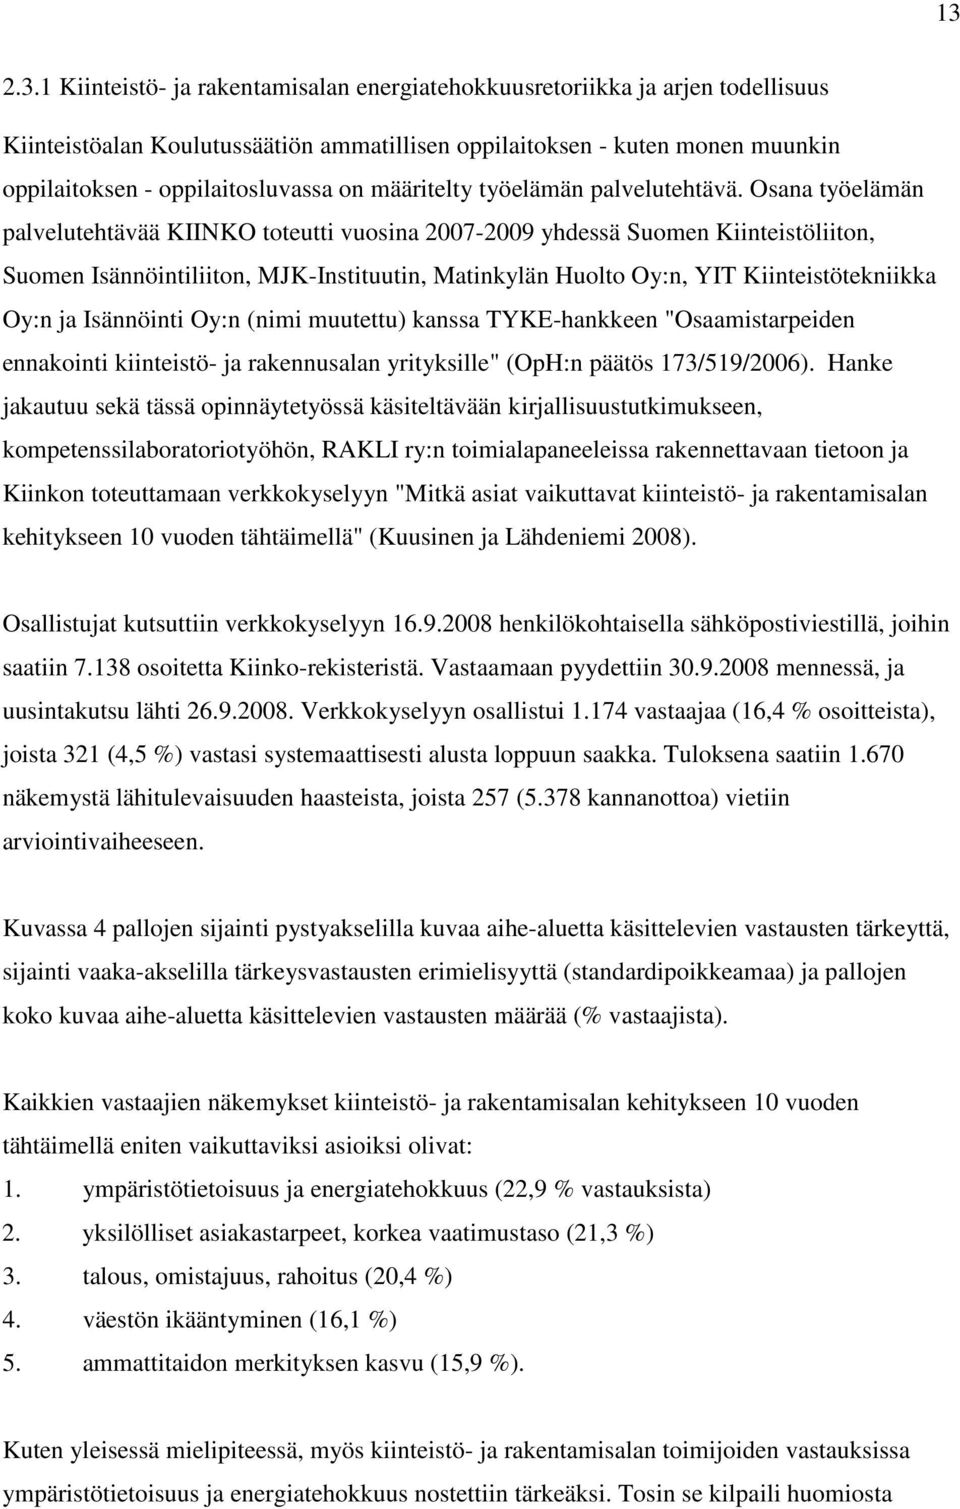 Osana työelämän palvelutehtävää KIINKO toteutti vuosina 2007-2009 yhdessä Suomen Kiinteistöliiton, Suomen Isännöintiliiton, MJK-Instituutin, Matinkylän Huolto Oy:n, YIT Kiinteistötekniikka Oy:n ja